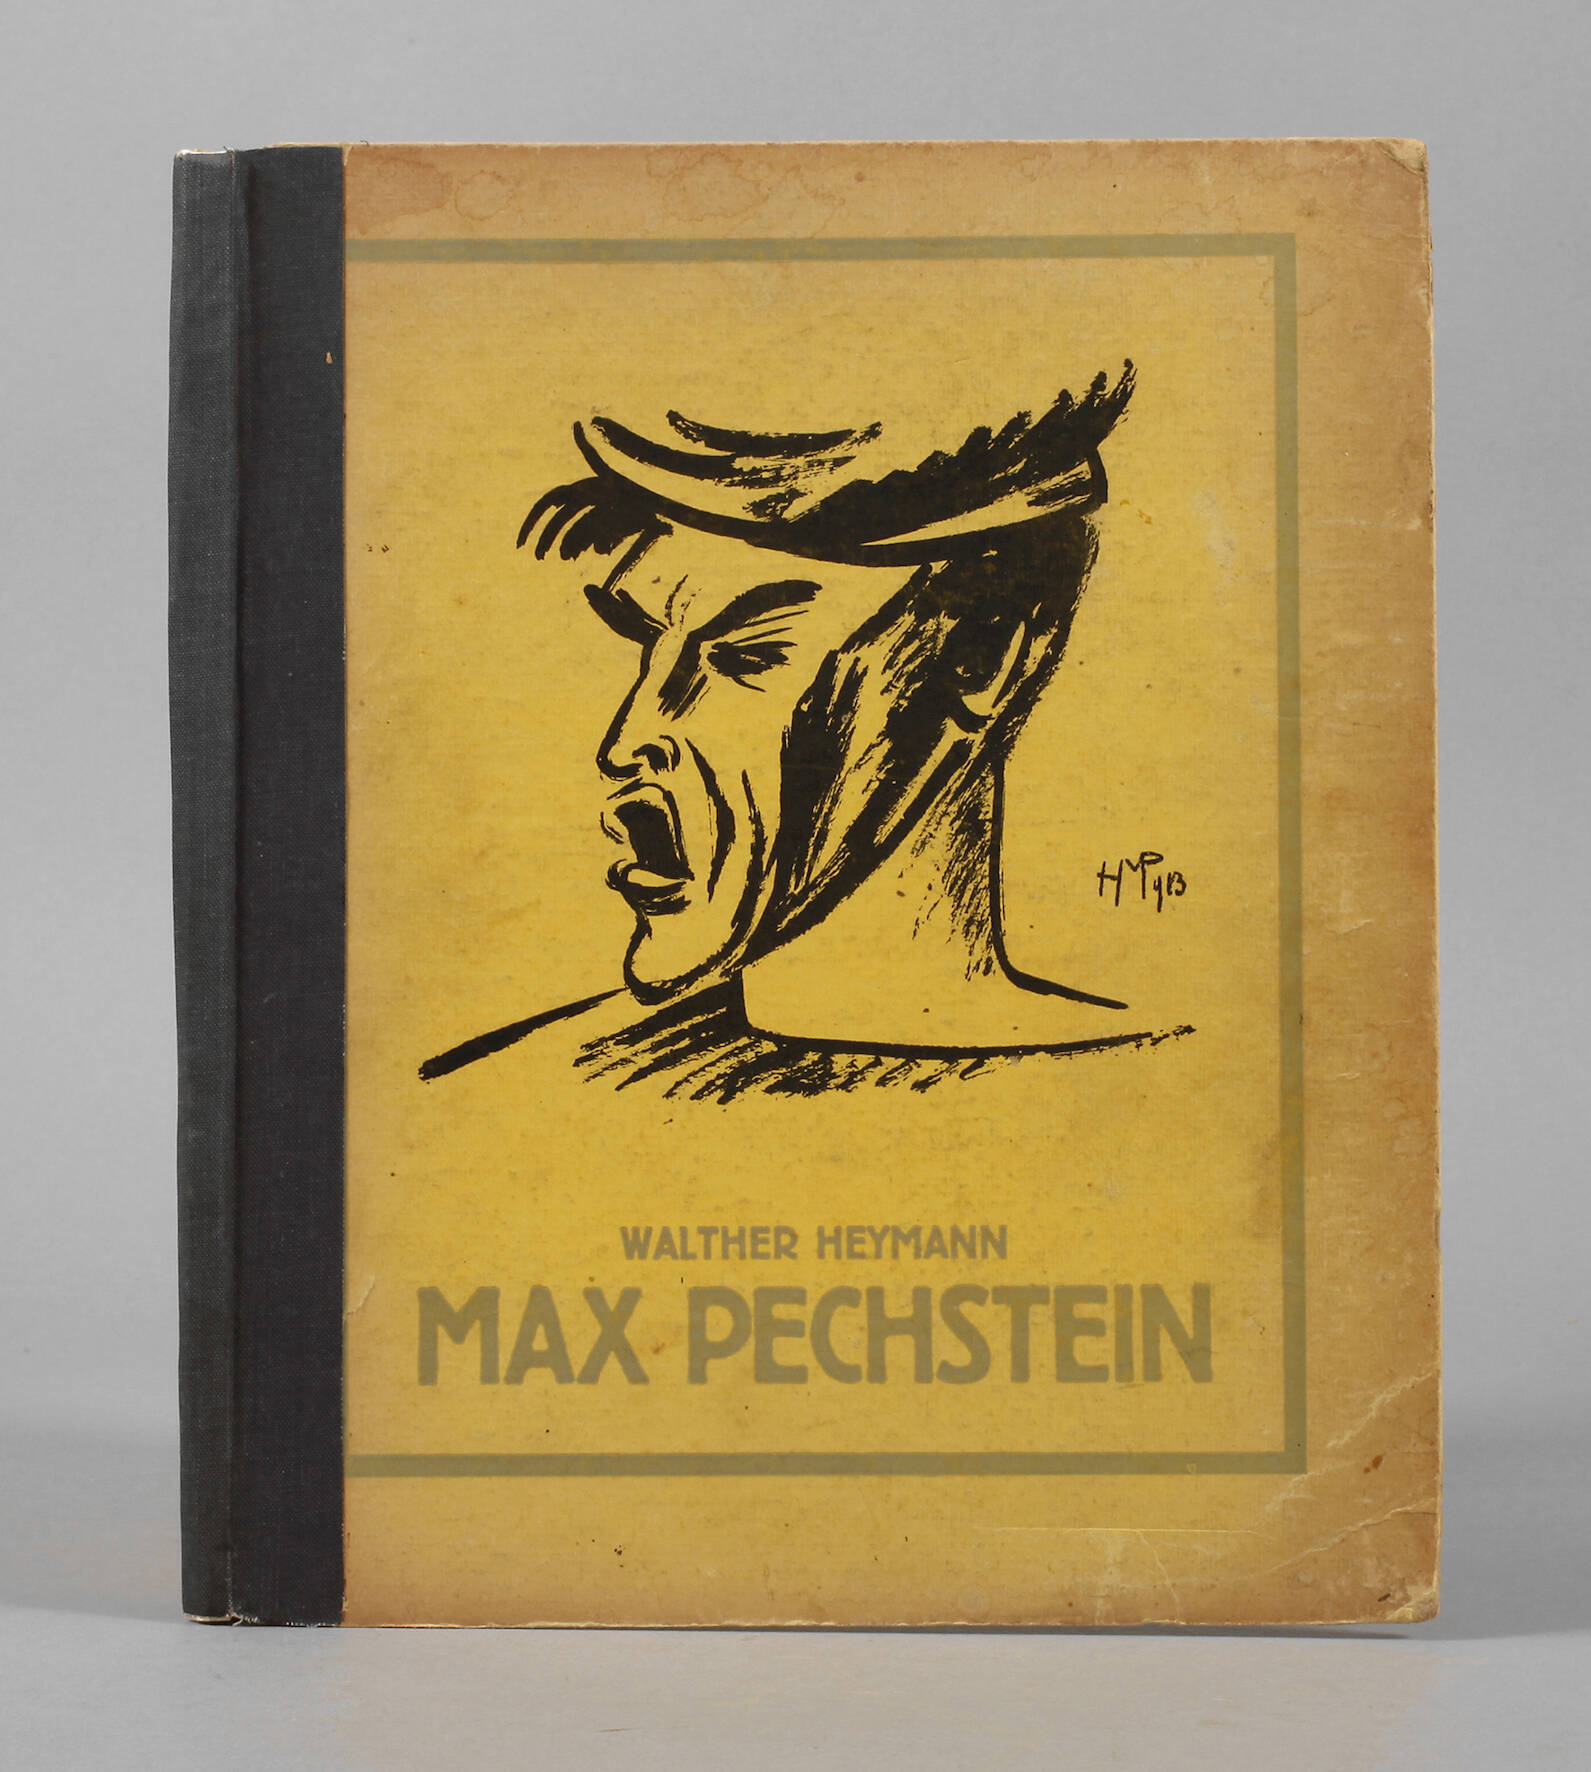 Max Pechstein von Walther Heymann